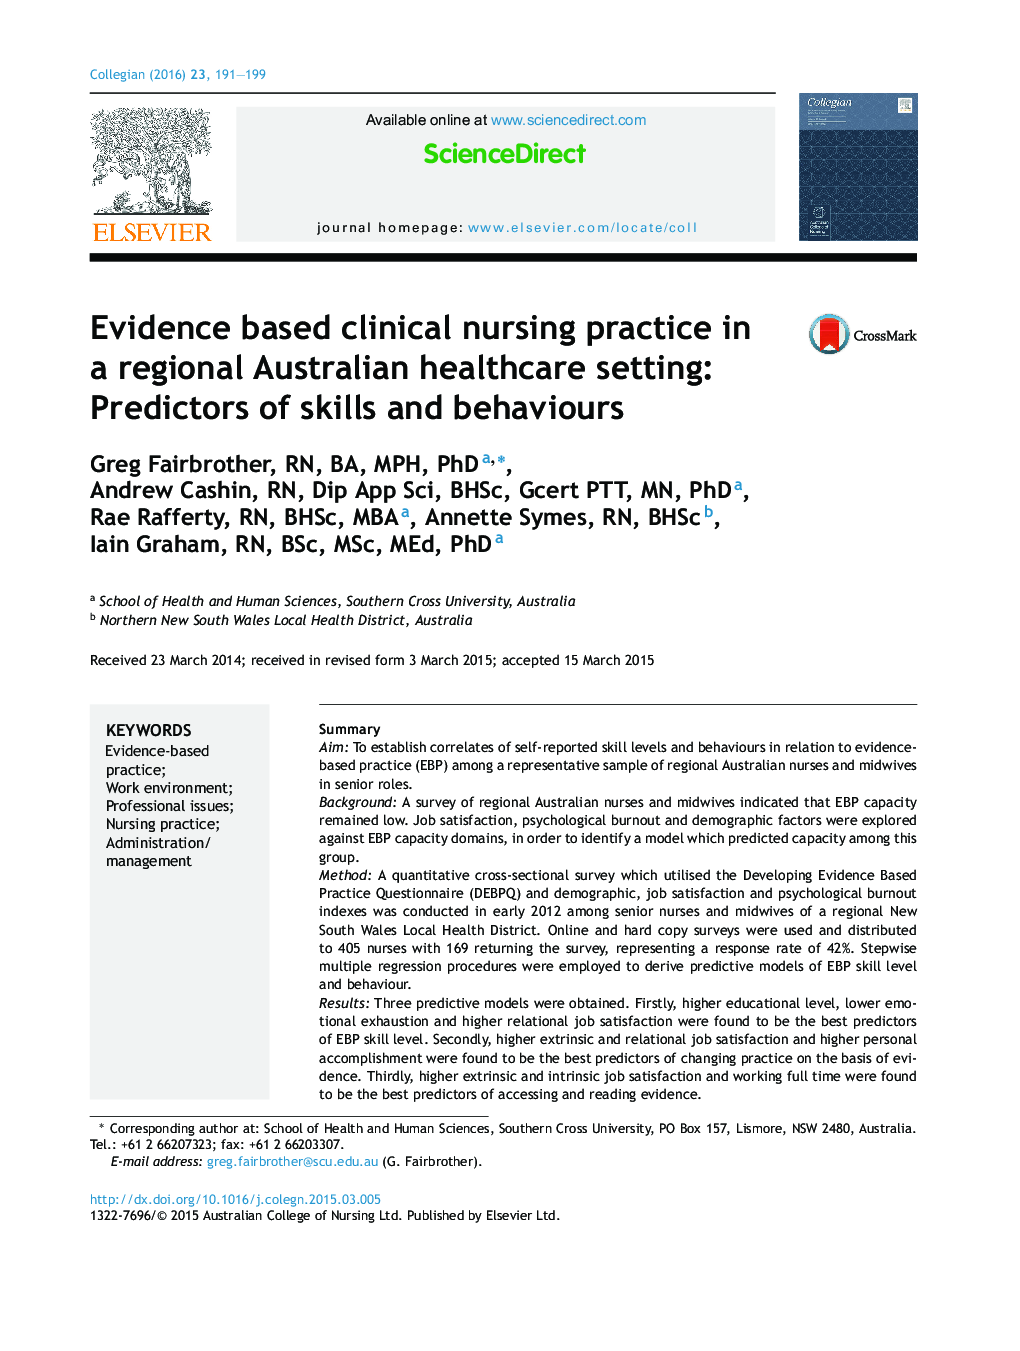 شیوه های پرستاری بالینی مبتنی بر شواهد در مراکز بهداشتی استرالیا منطقه ای: پیش بینی کننده مهارت ها و رفتارهای